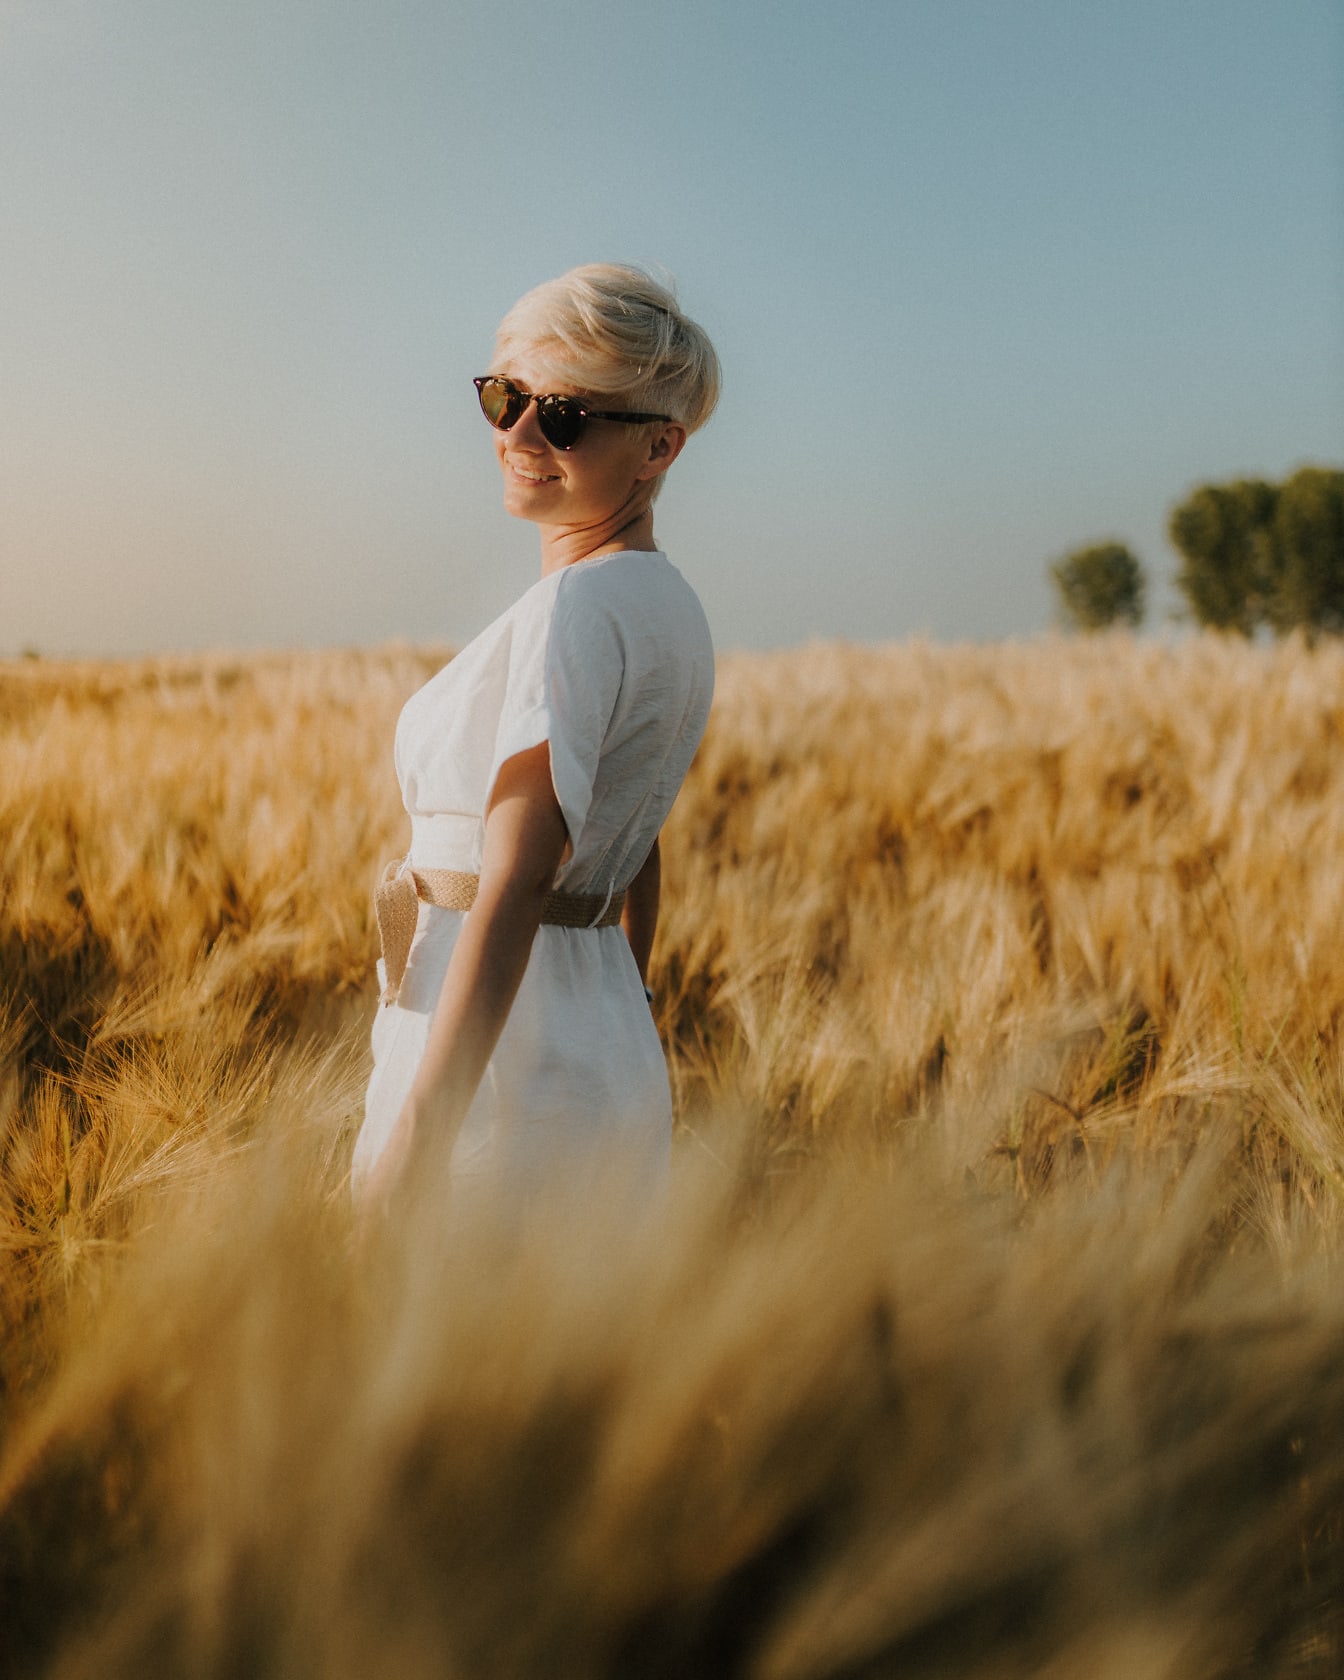 Người phụ nữ tóc vàng hạnh phúc trong chiếc váy trắng trên cánh đồng lúa mì